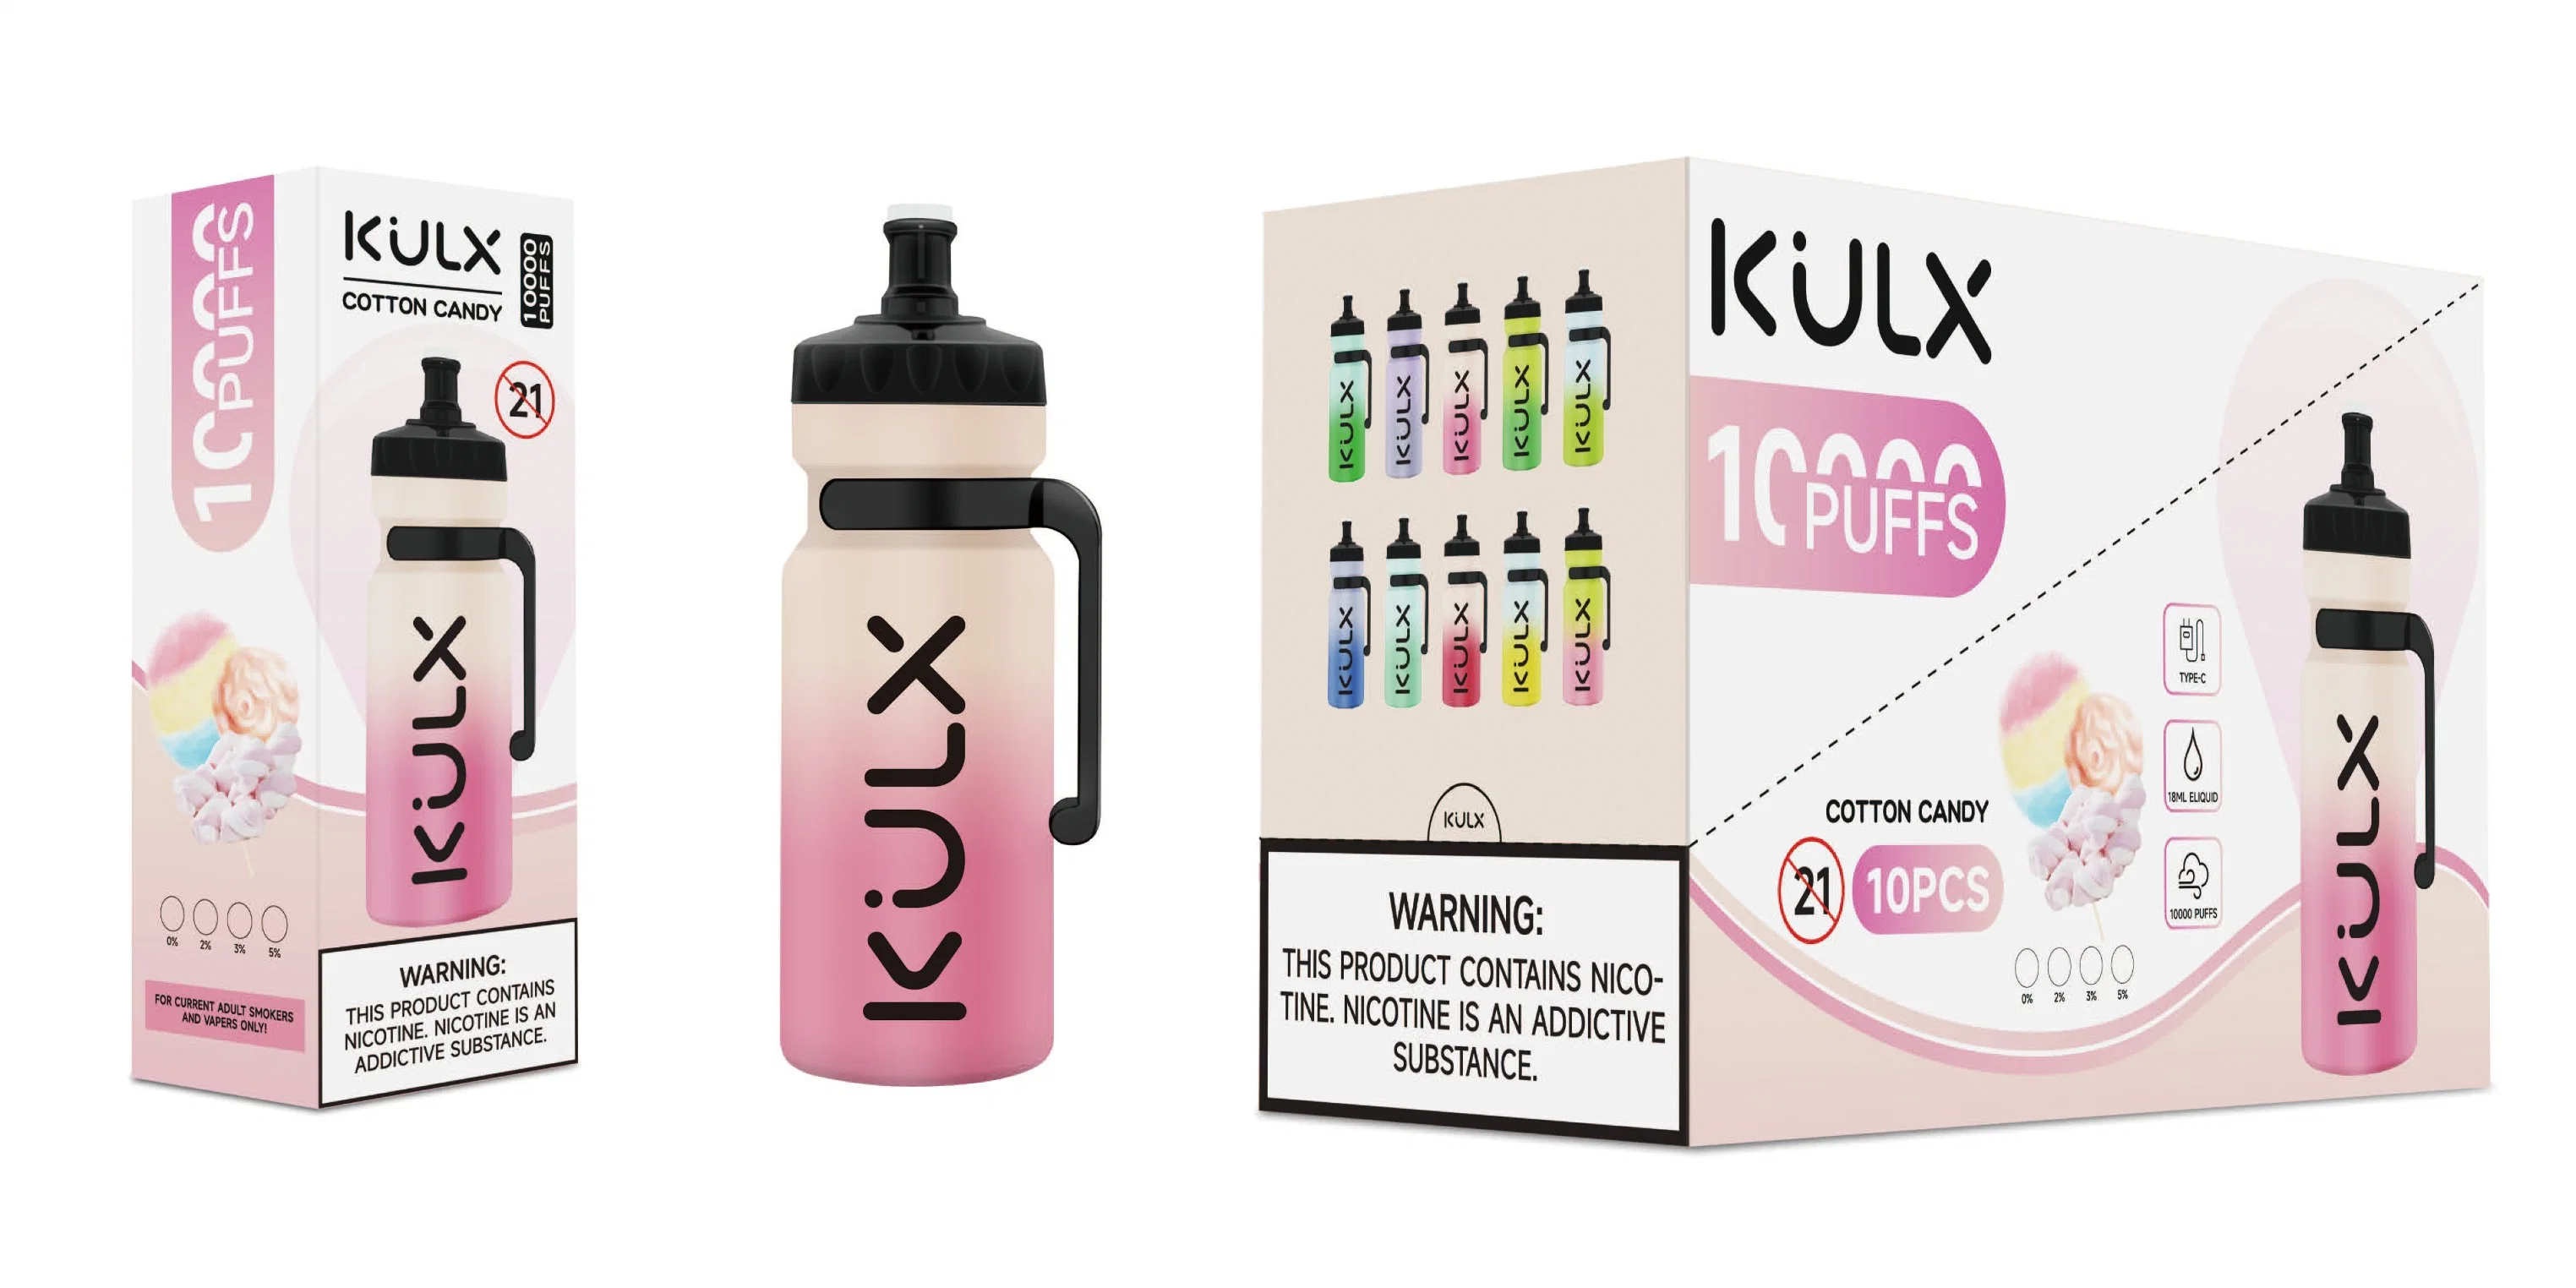 Kulx 10000 puffs OEM Custom Vaporizer Pen оптом. Одноразовый E Сигаретный электрический сигарет